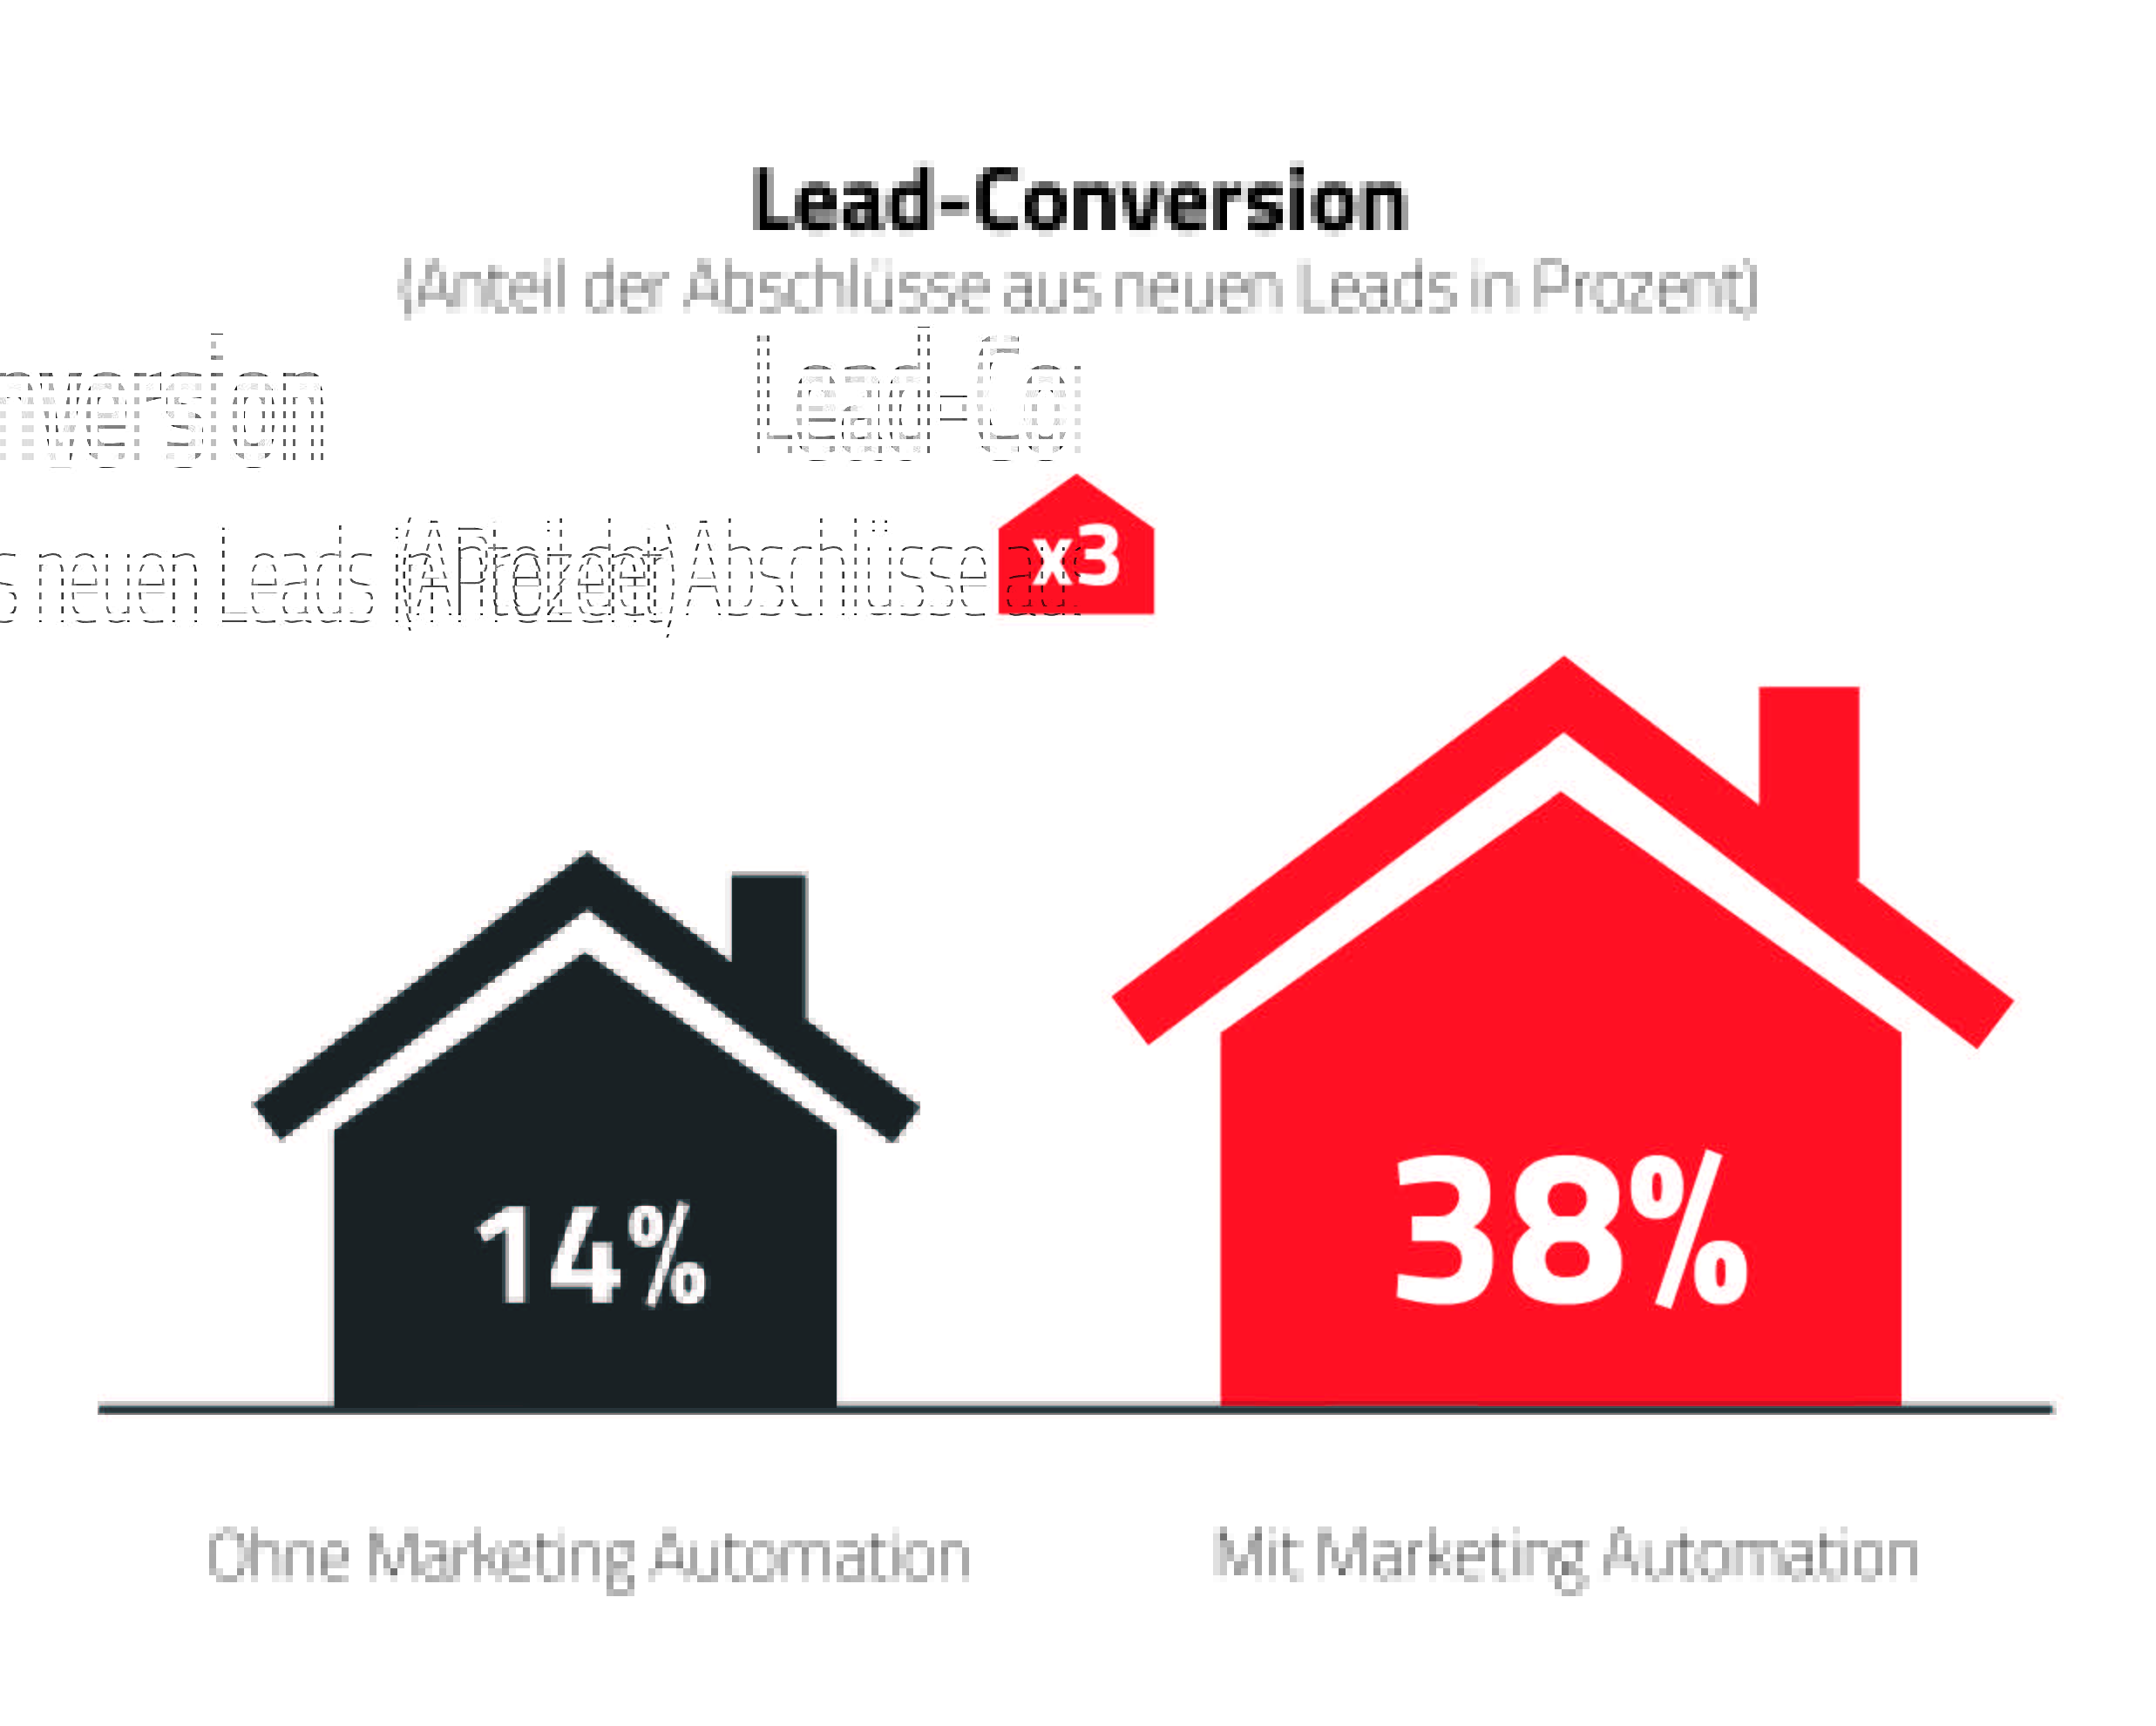 Beispiel: Dank Marketing Automation ließ sich die Lead-Conversion nahezu verdreifachen. Quelle: Evalanche (SC-Networks GmbH).